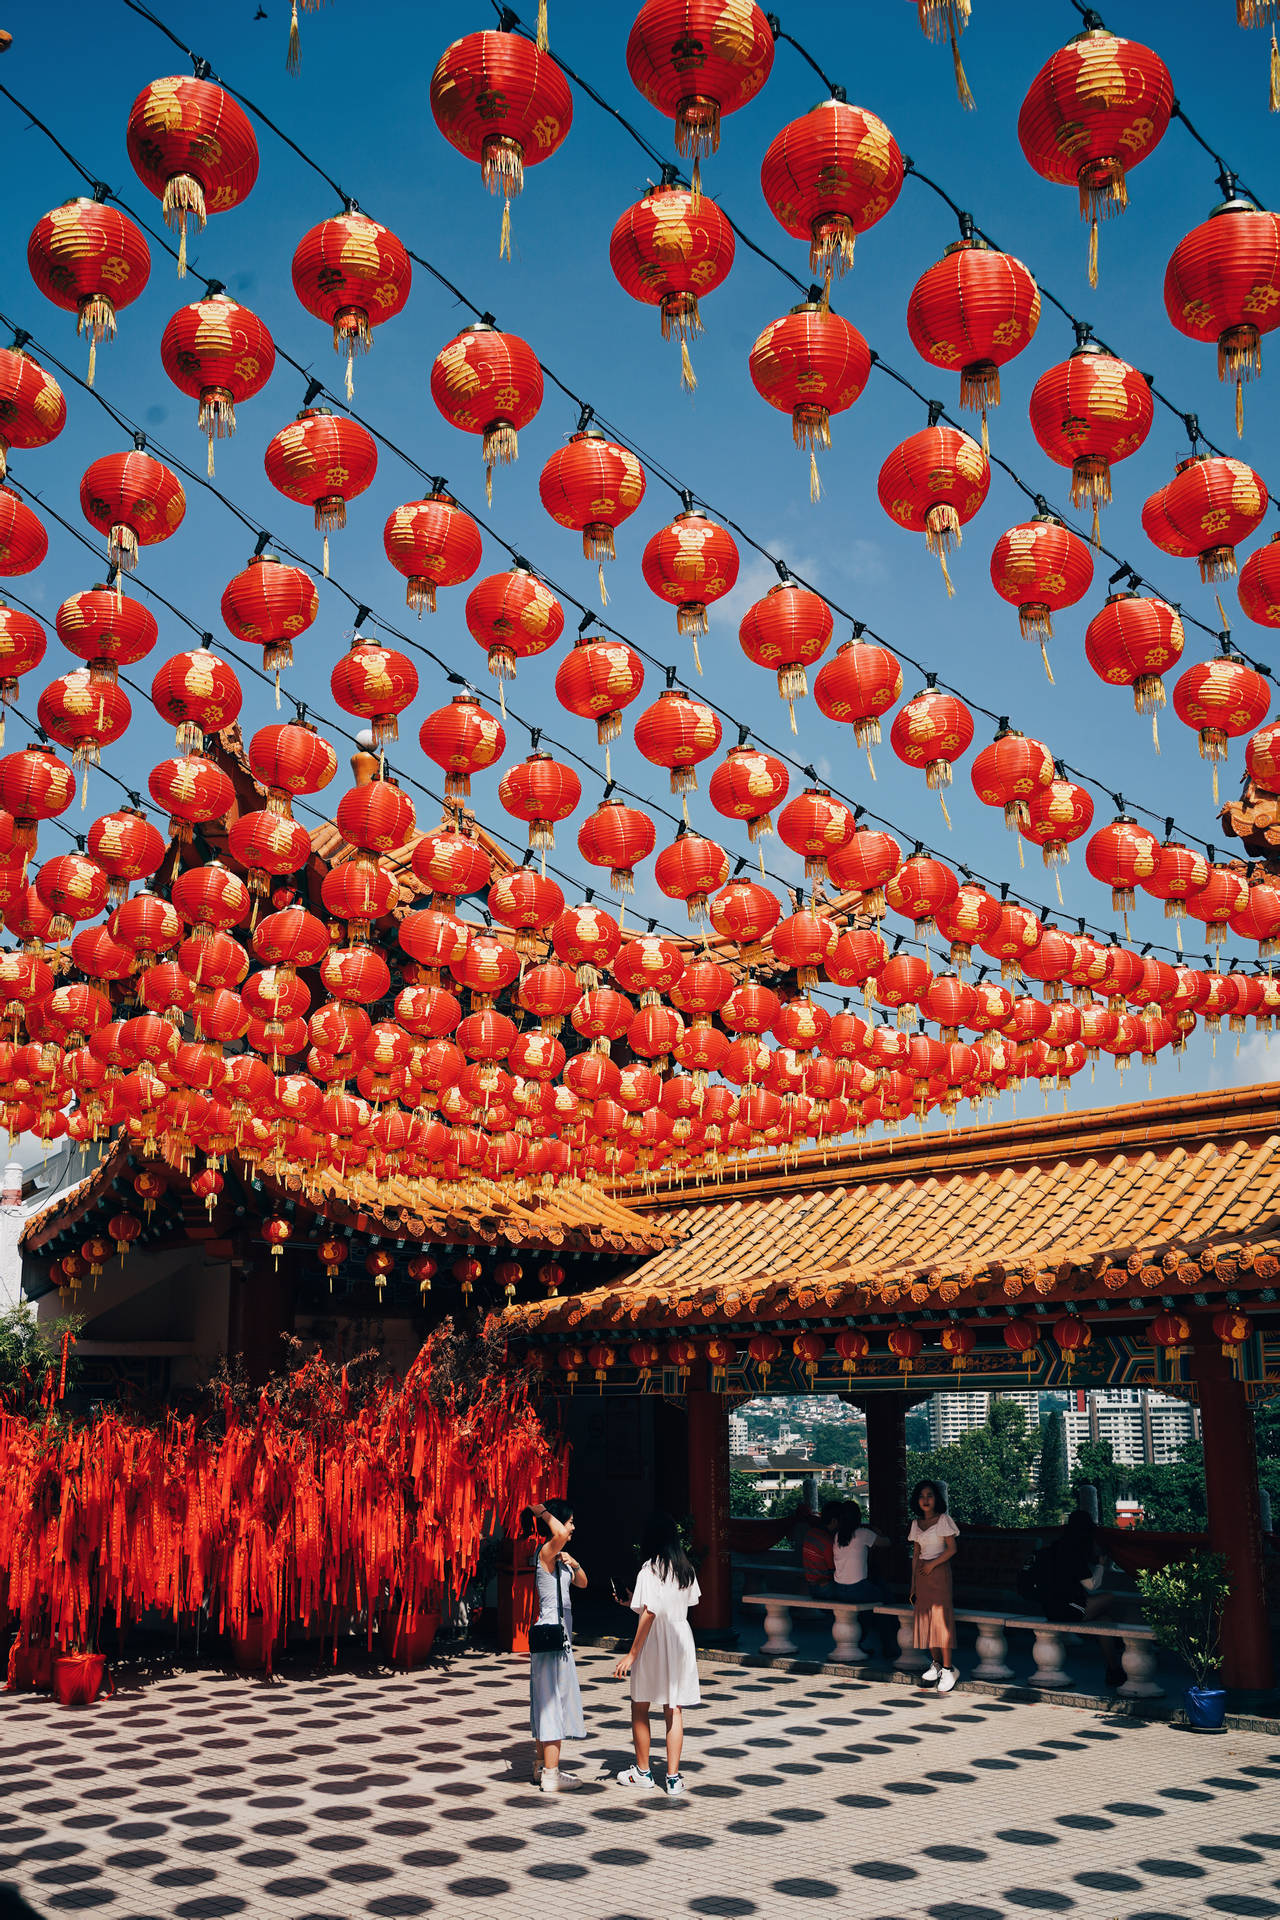 Caption: Spirited Celebration Of Chinese New Year